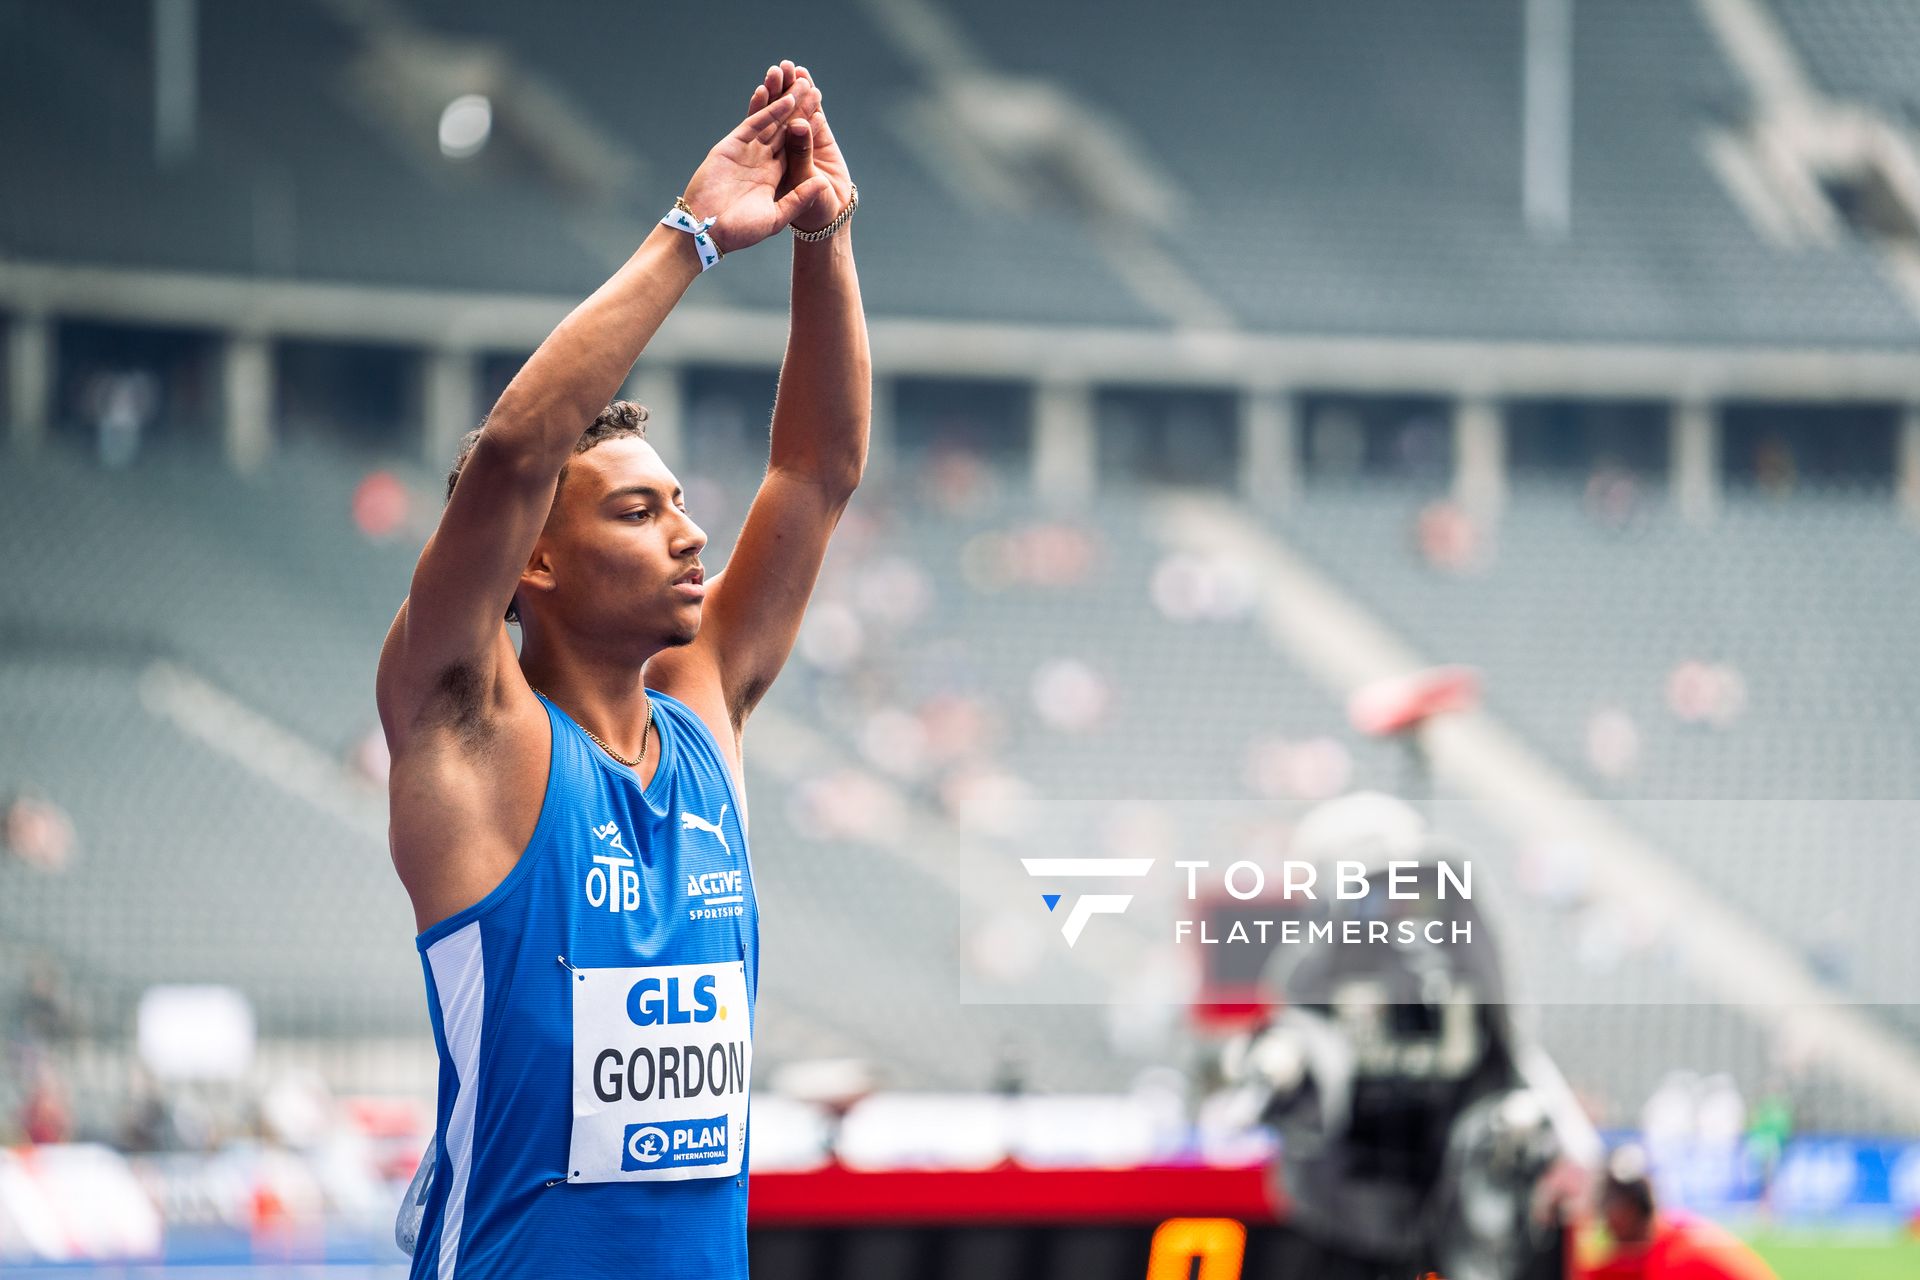 Jordan Gordon (OTB Osnabrueck) im Halbfinale waehrend der deutschen Leichtathletik-Meisterschaften im Olympiastadion am 25.06.2022 in Berlin